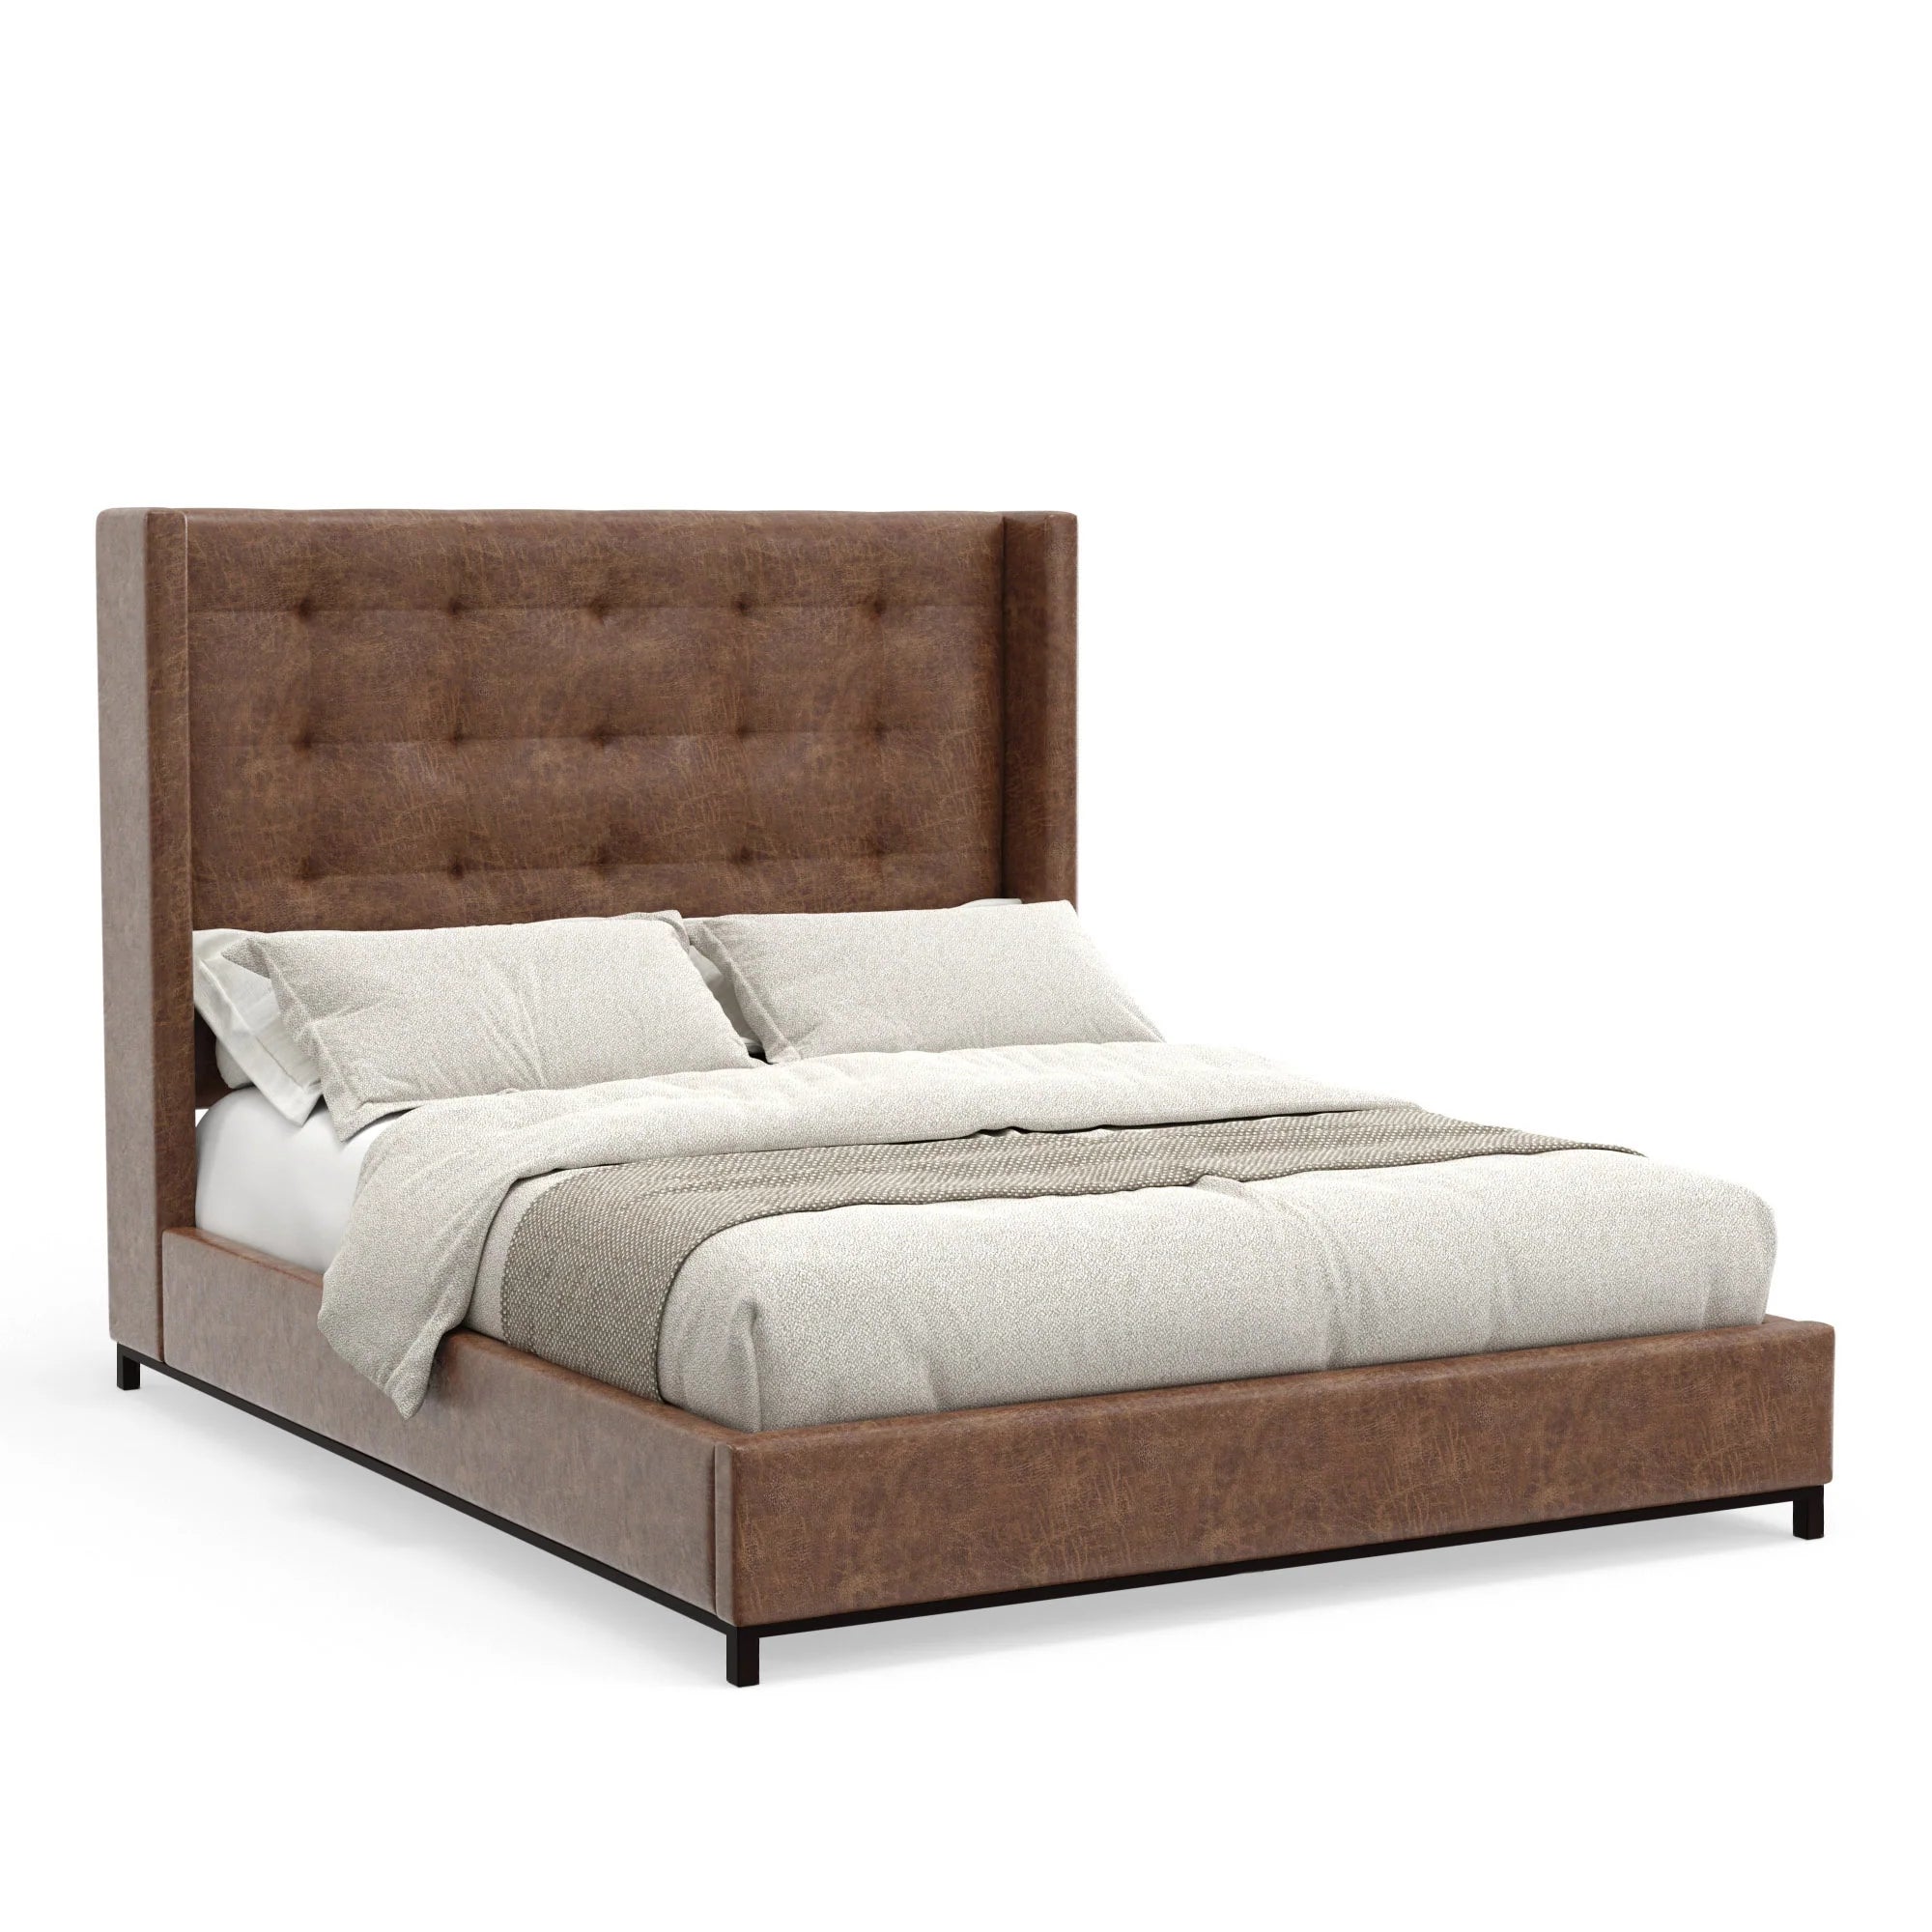 Mundo Upholstered Platform Bed - Brown